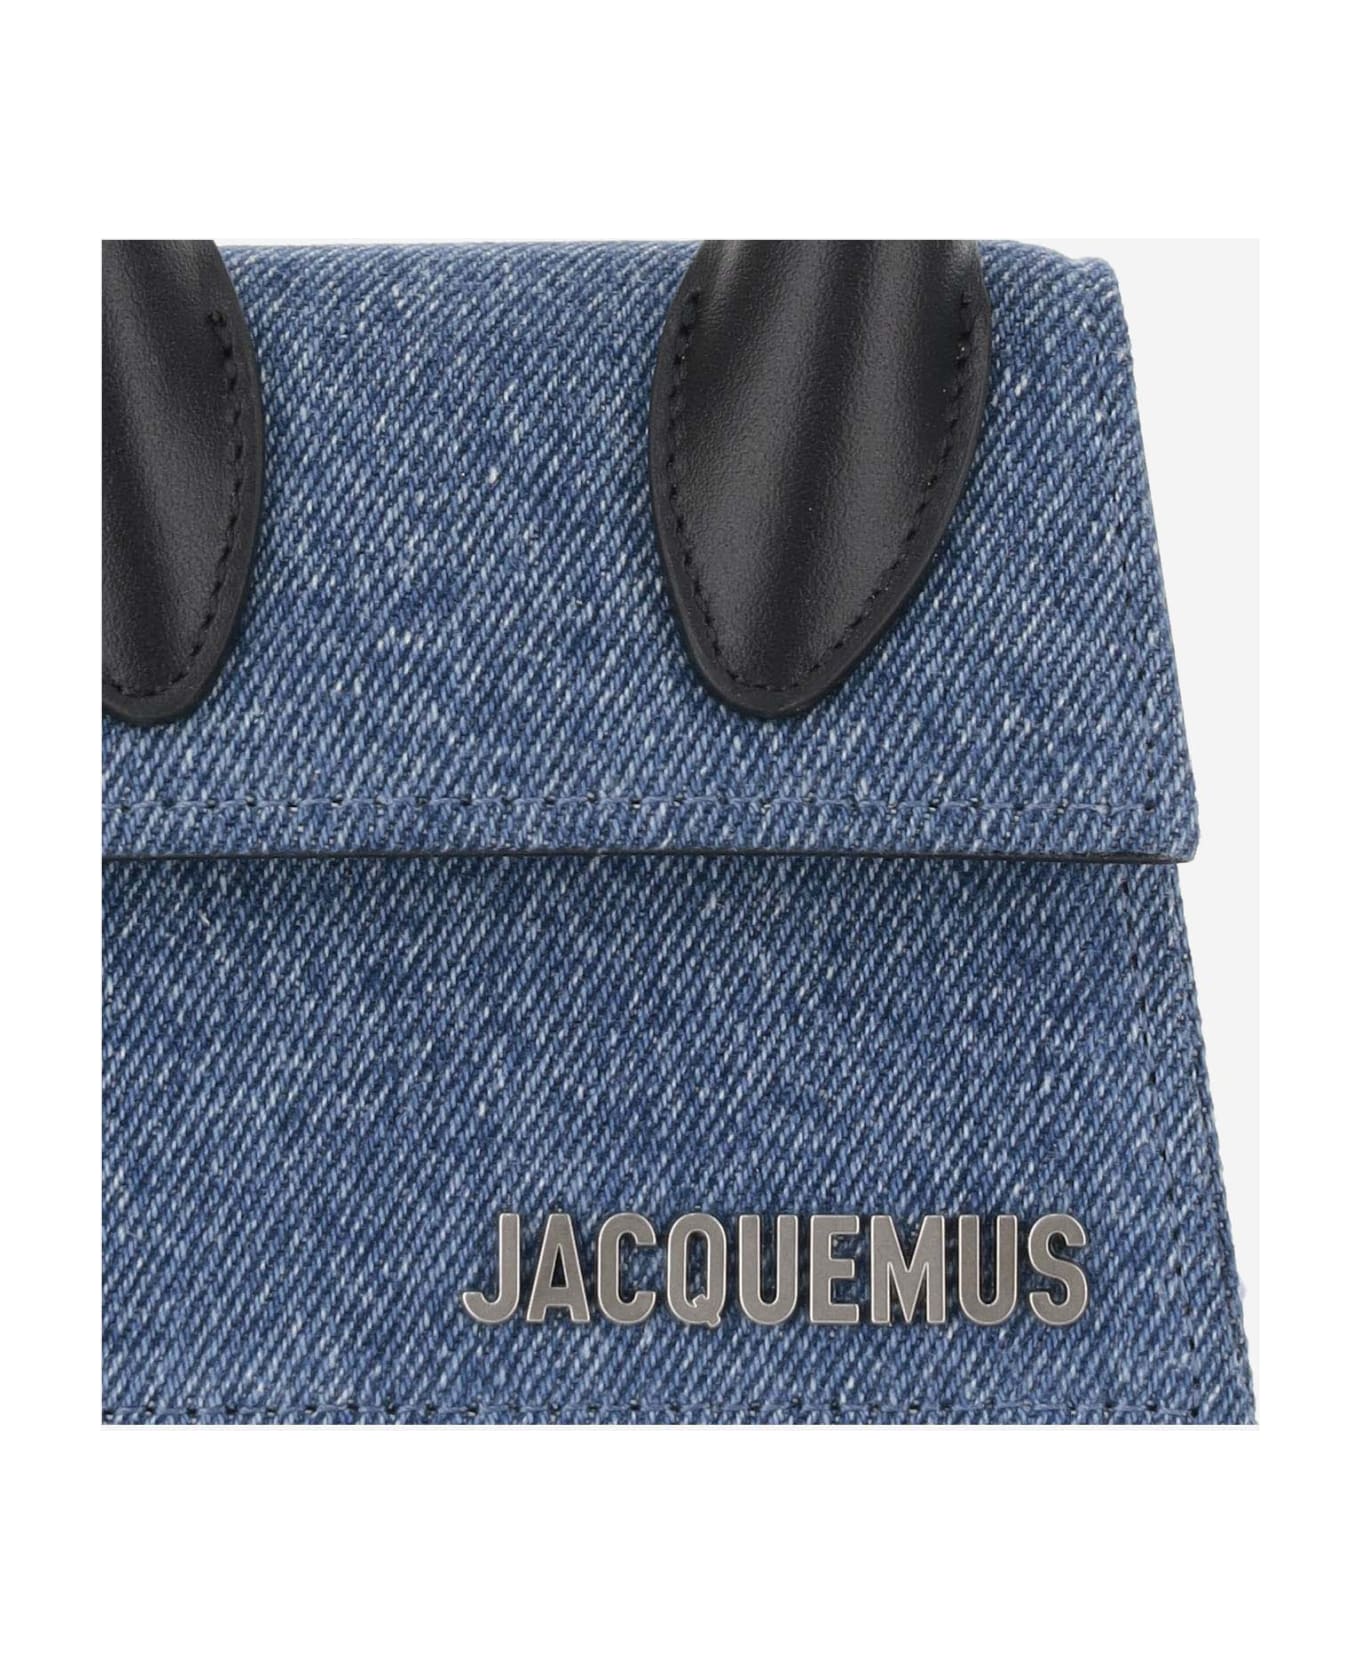 Jacquemus Chiquito Homme Denim Mini Bag - Blue